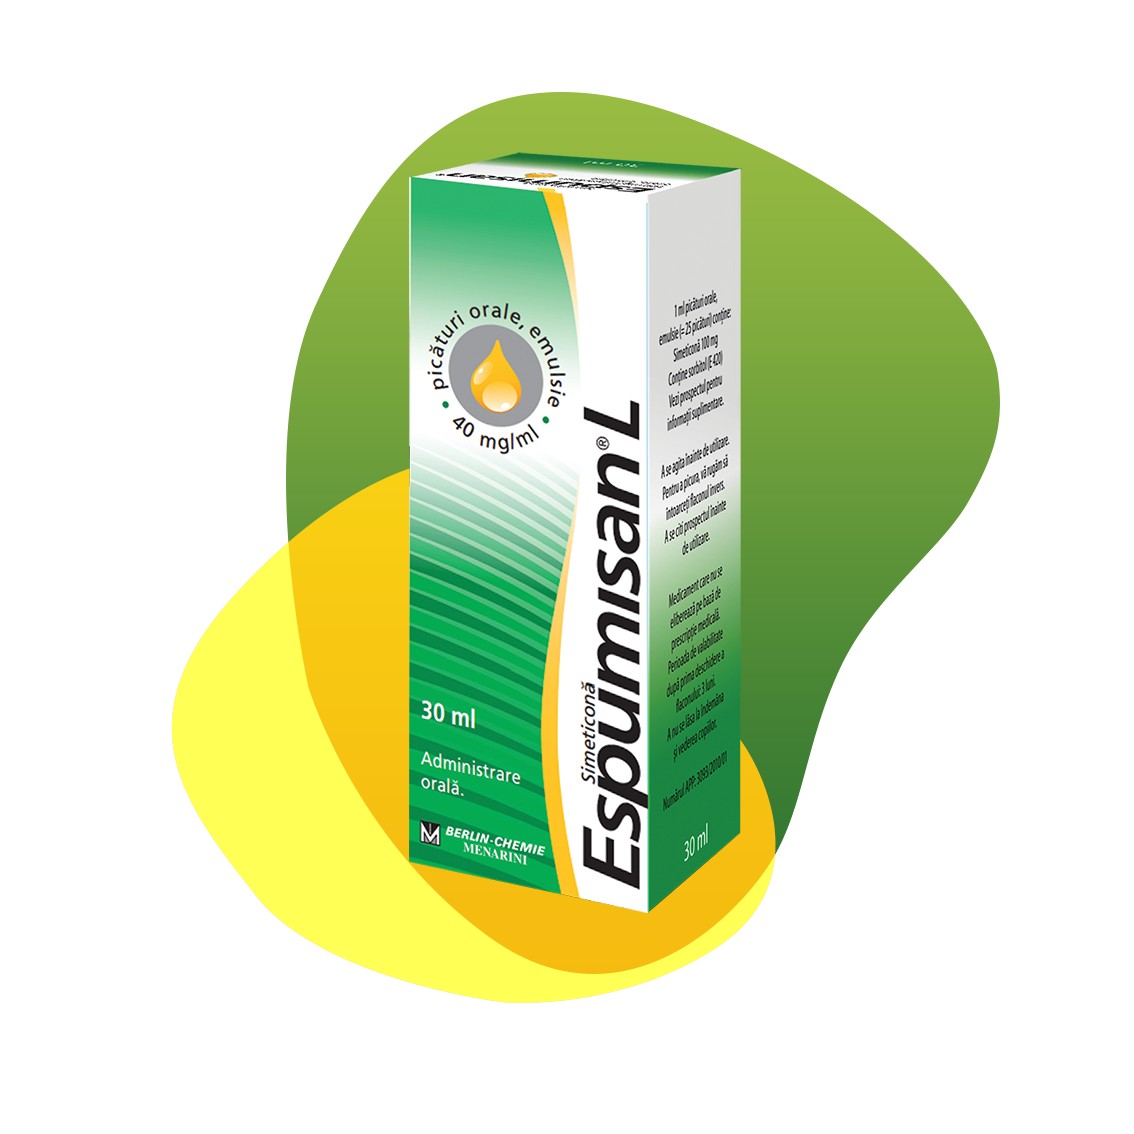 Packaging of Espumisan 40 mg Emulsion